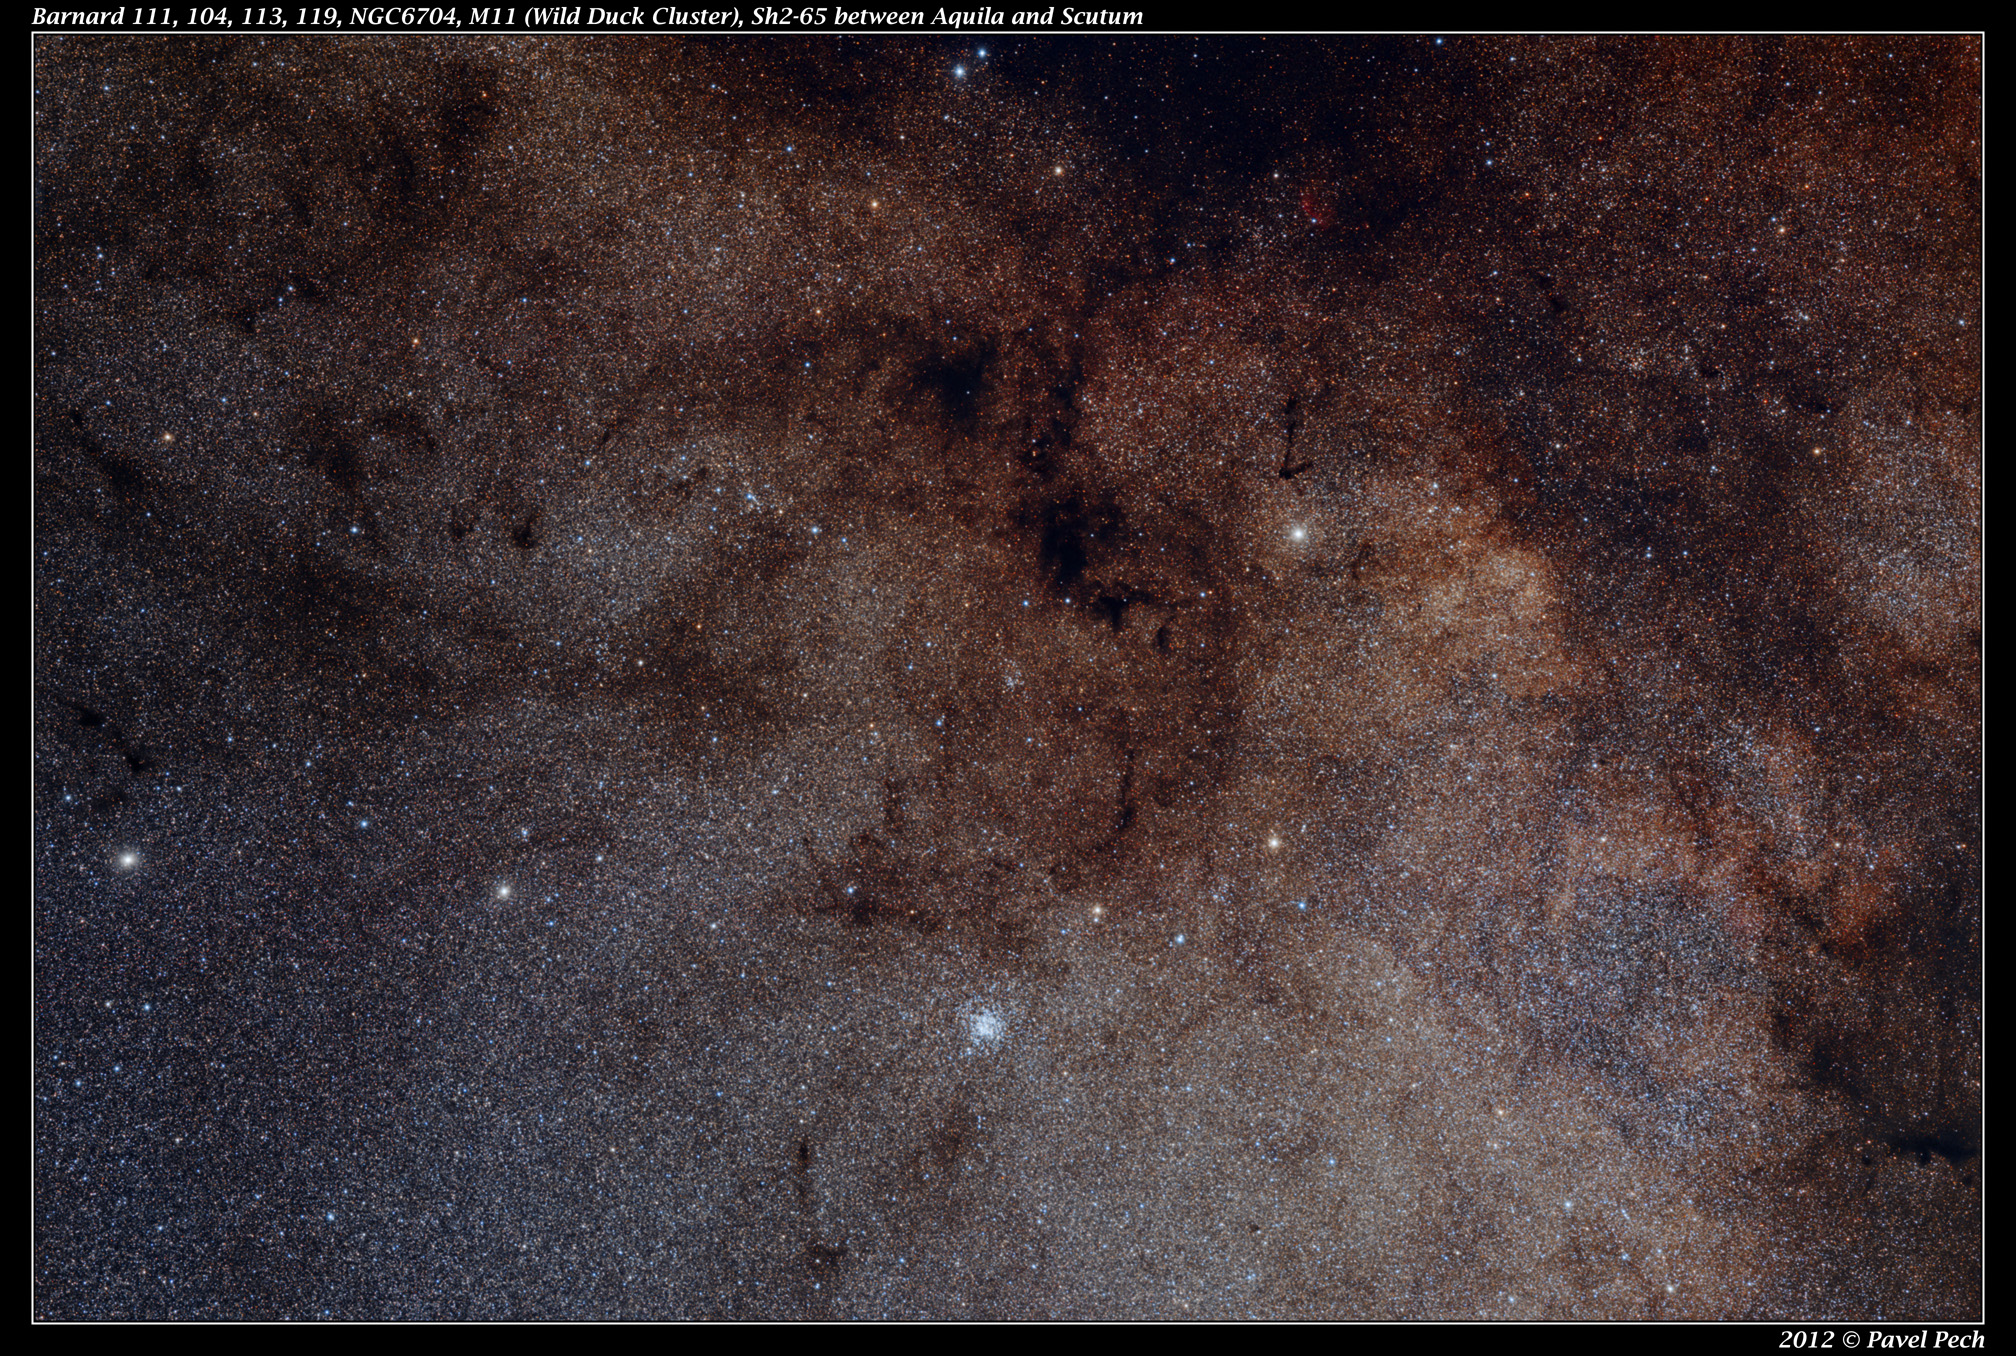 Barnard 111, 104, 113, 119, NGC6704, M11, Sh2-65